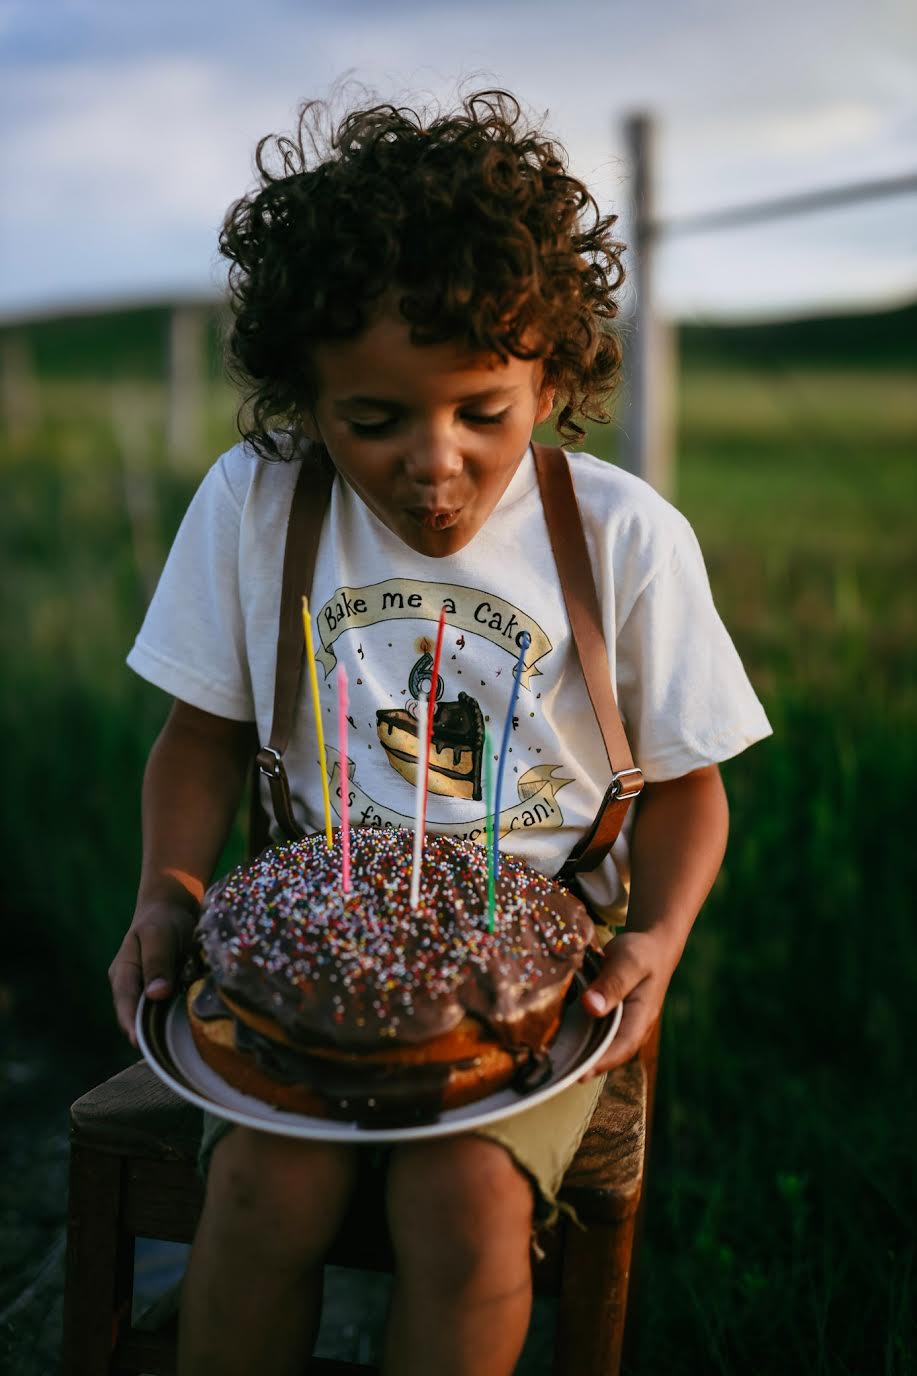 Bake Me a Cake! 6 [Toddler Tee]